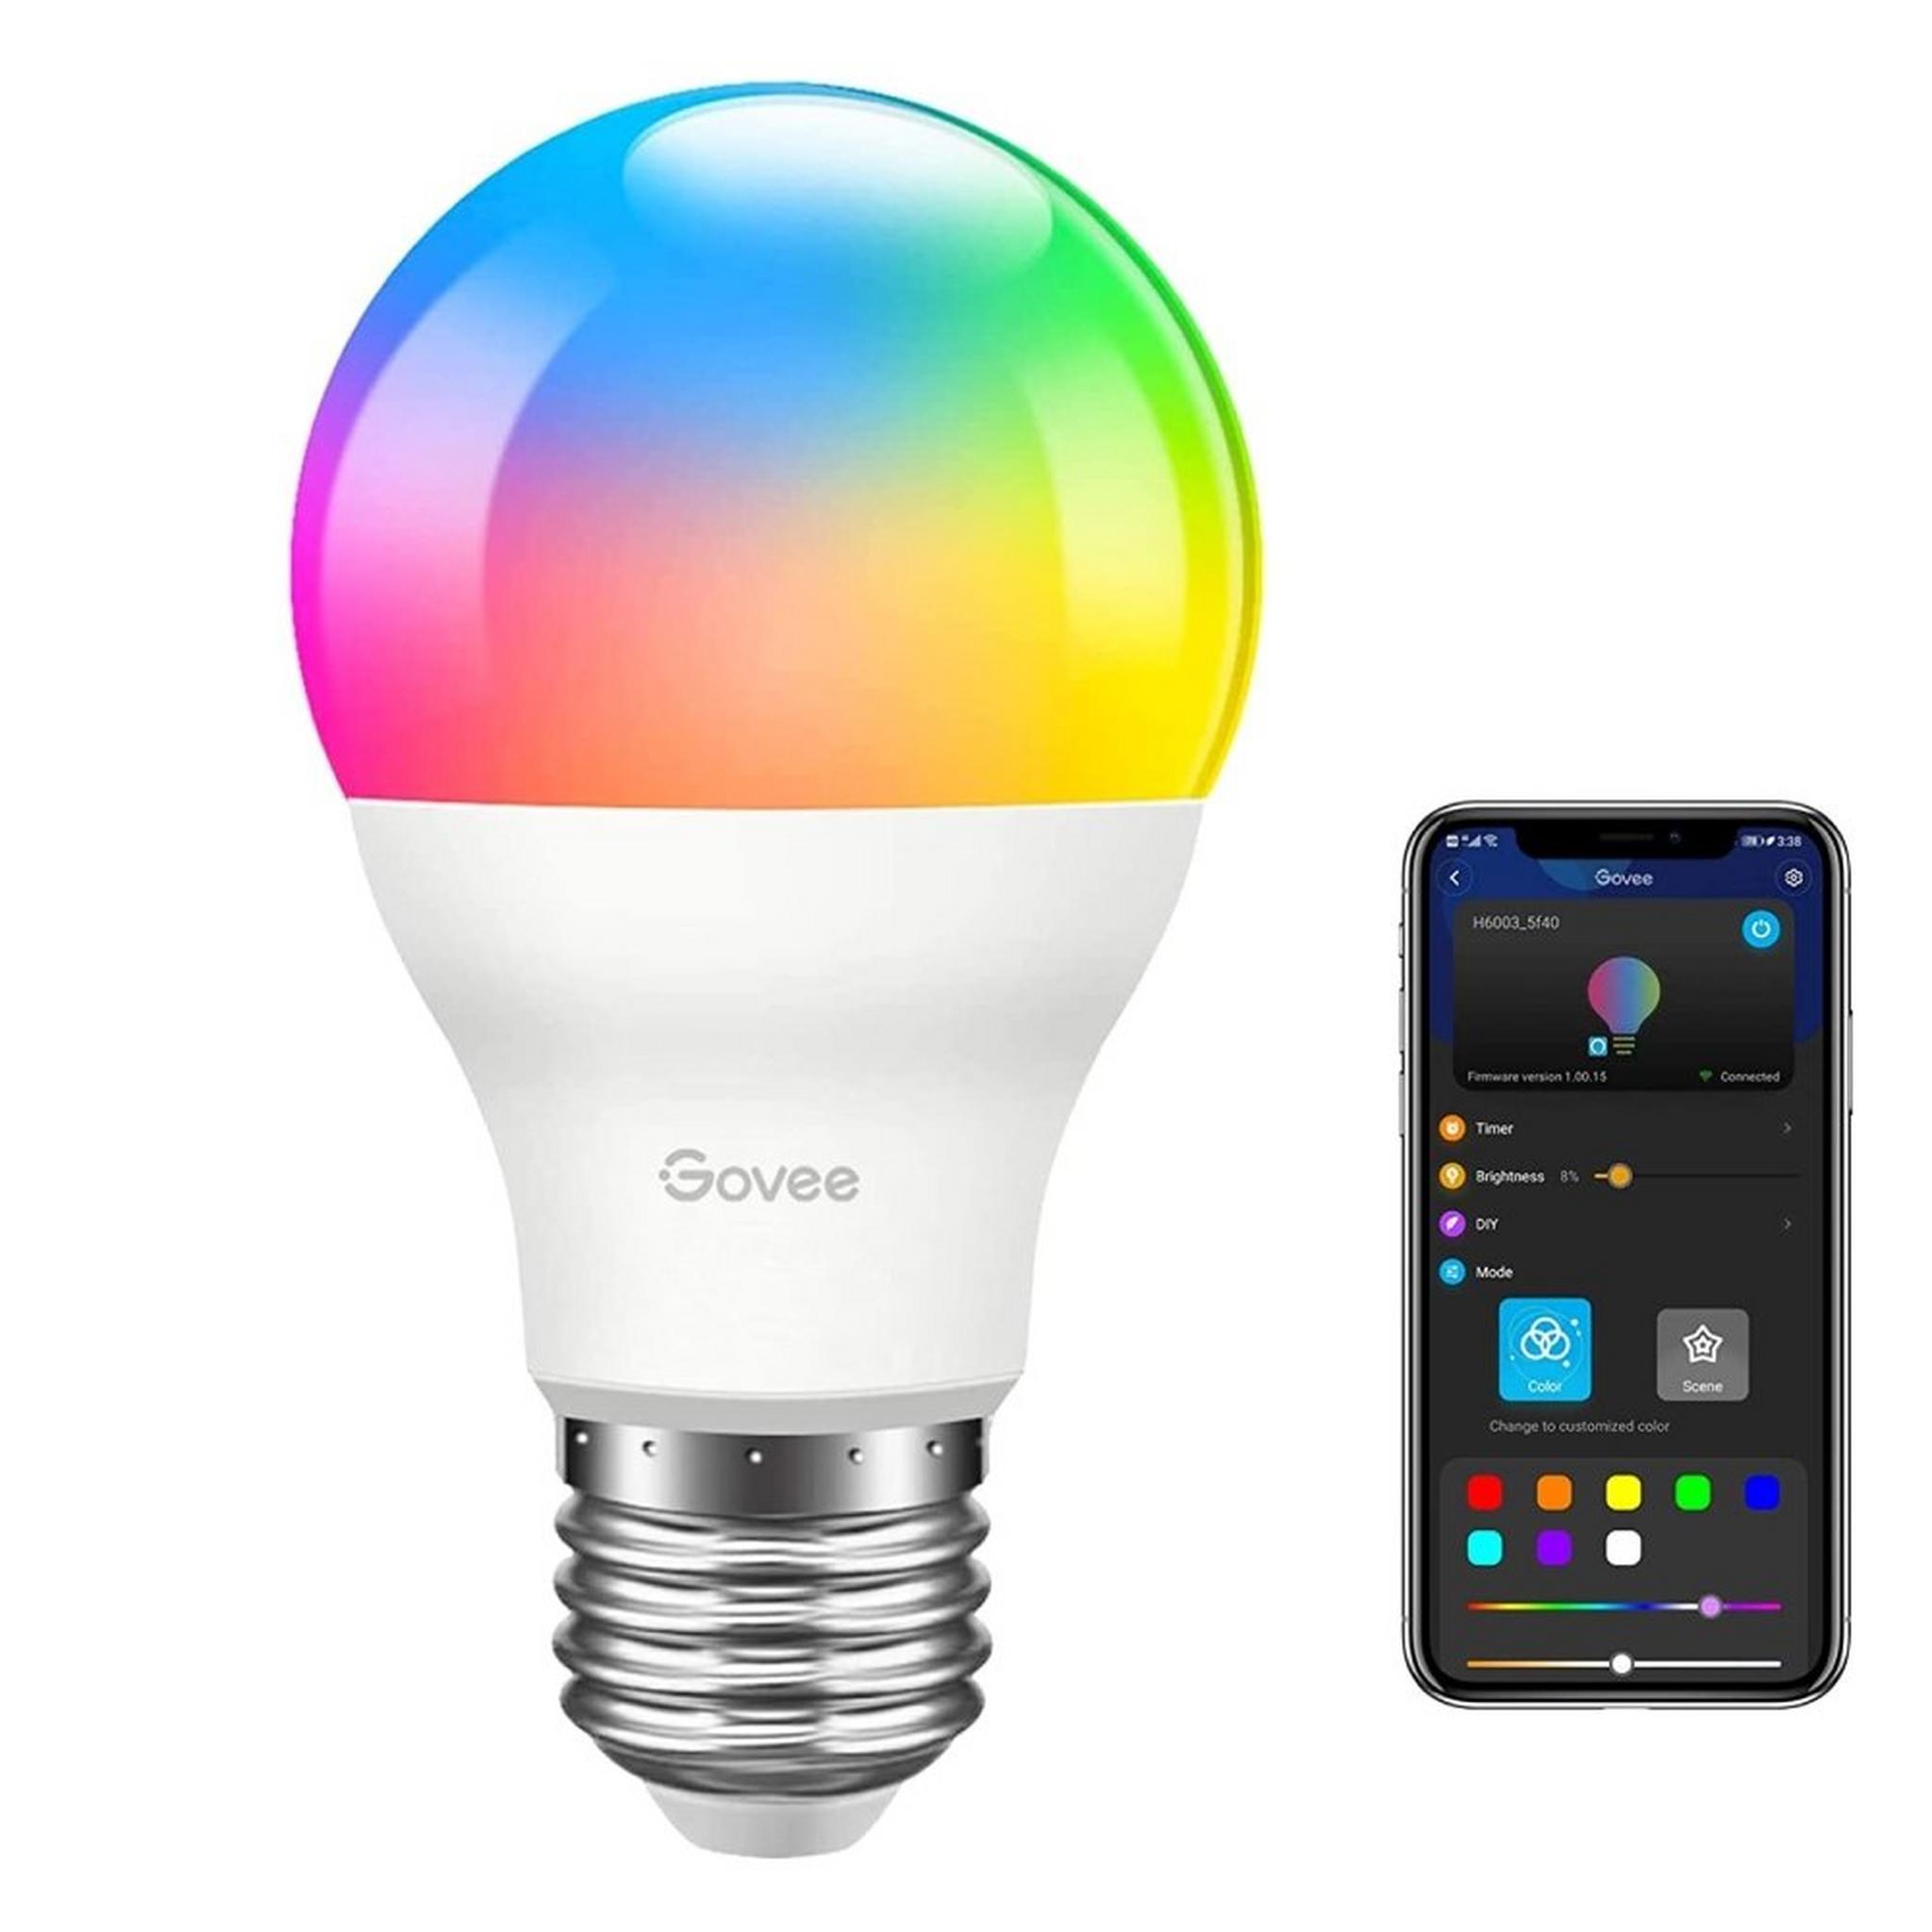 Govee Wi-Fi LED Bulb (H6003)